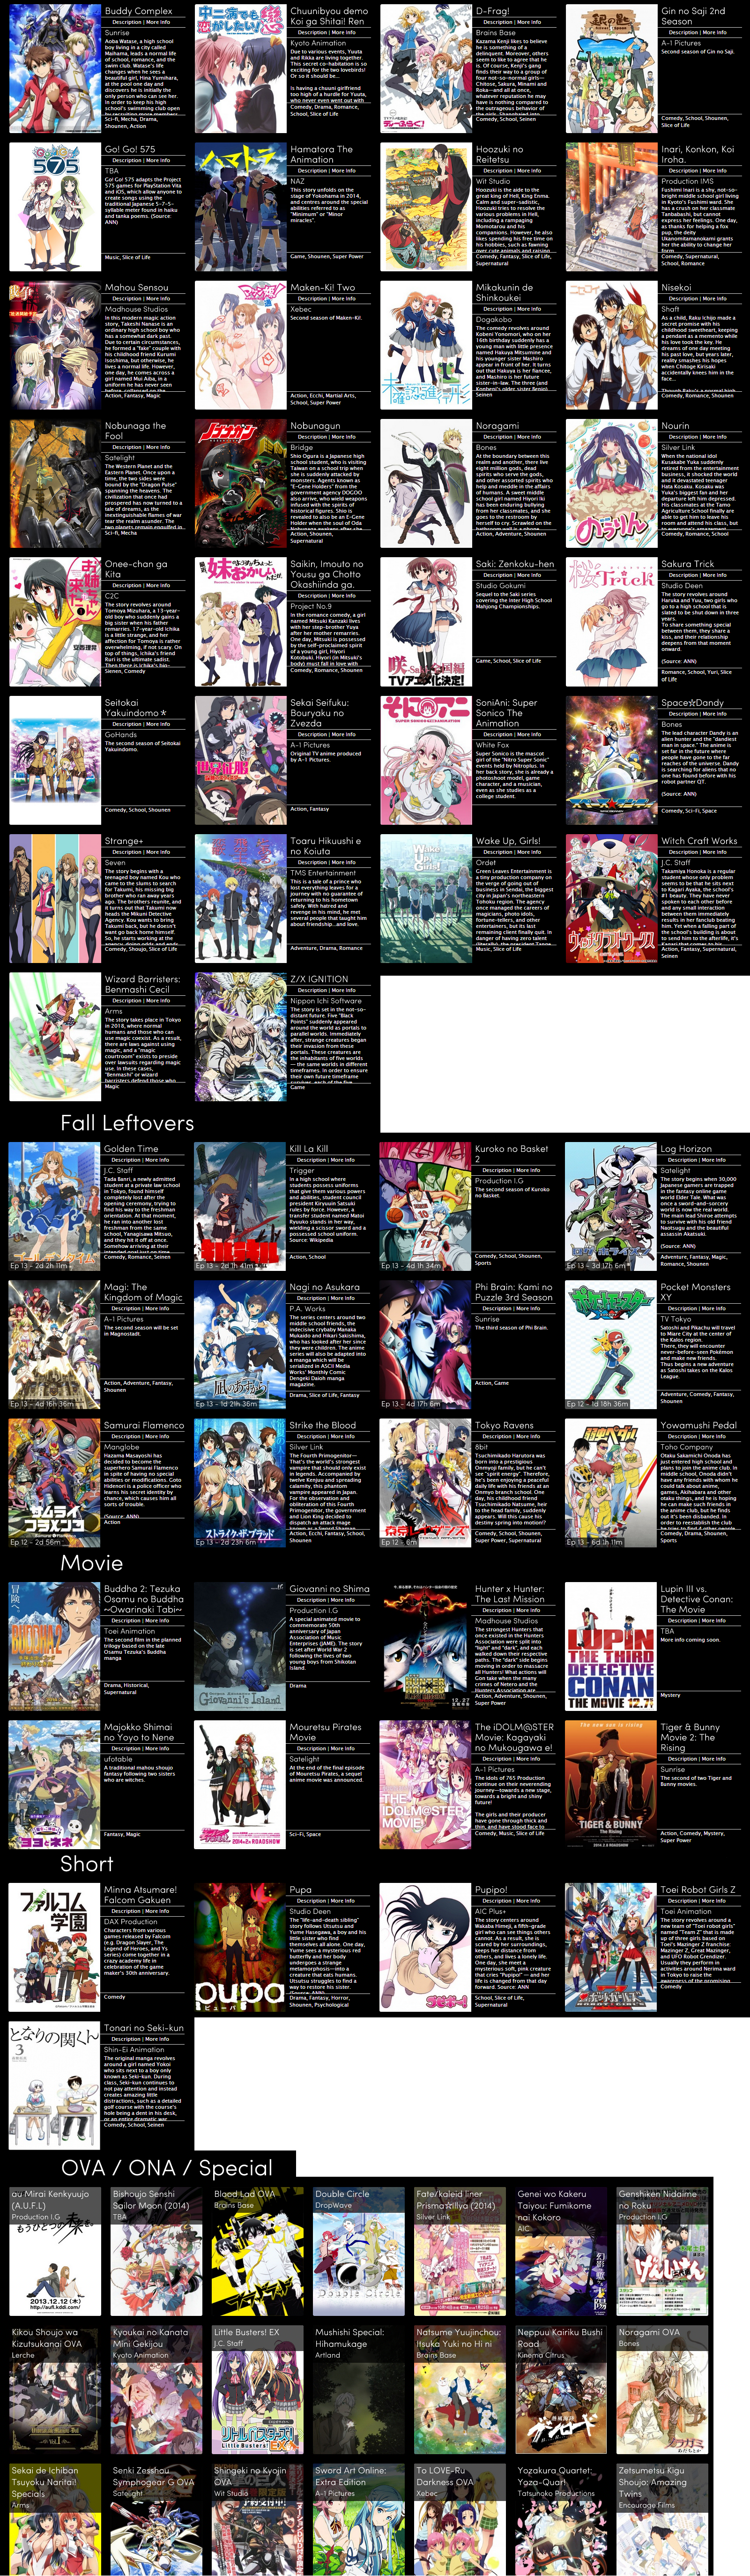 Anime List 2013